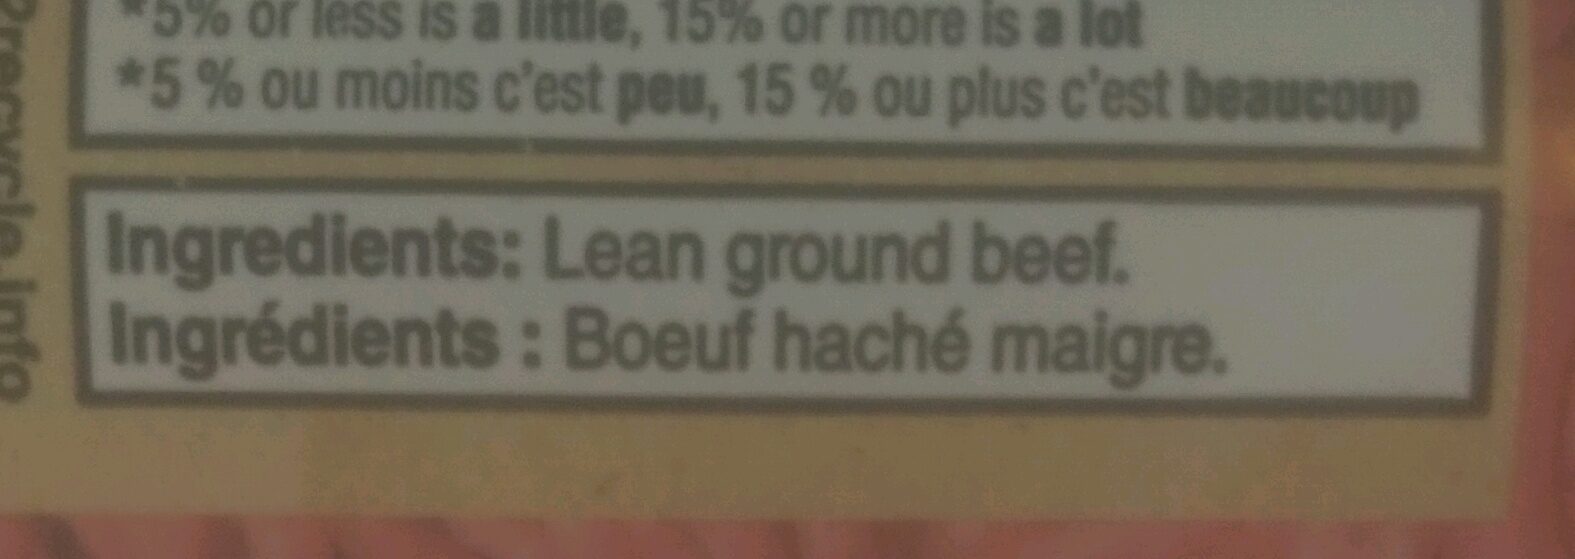 Lean Ground Beef - Ingredients